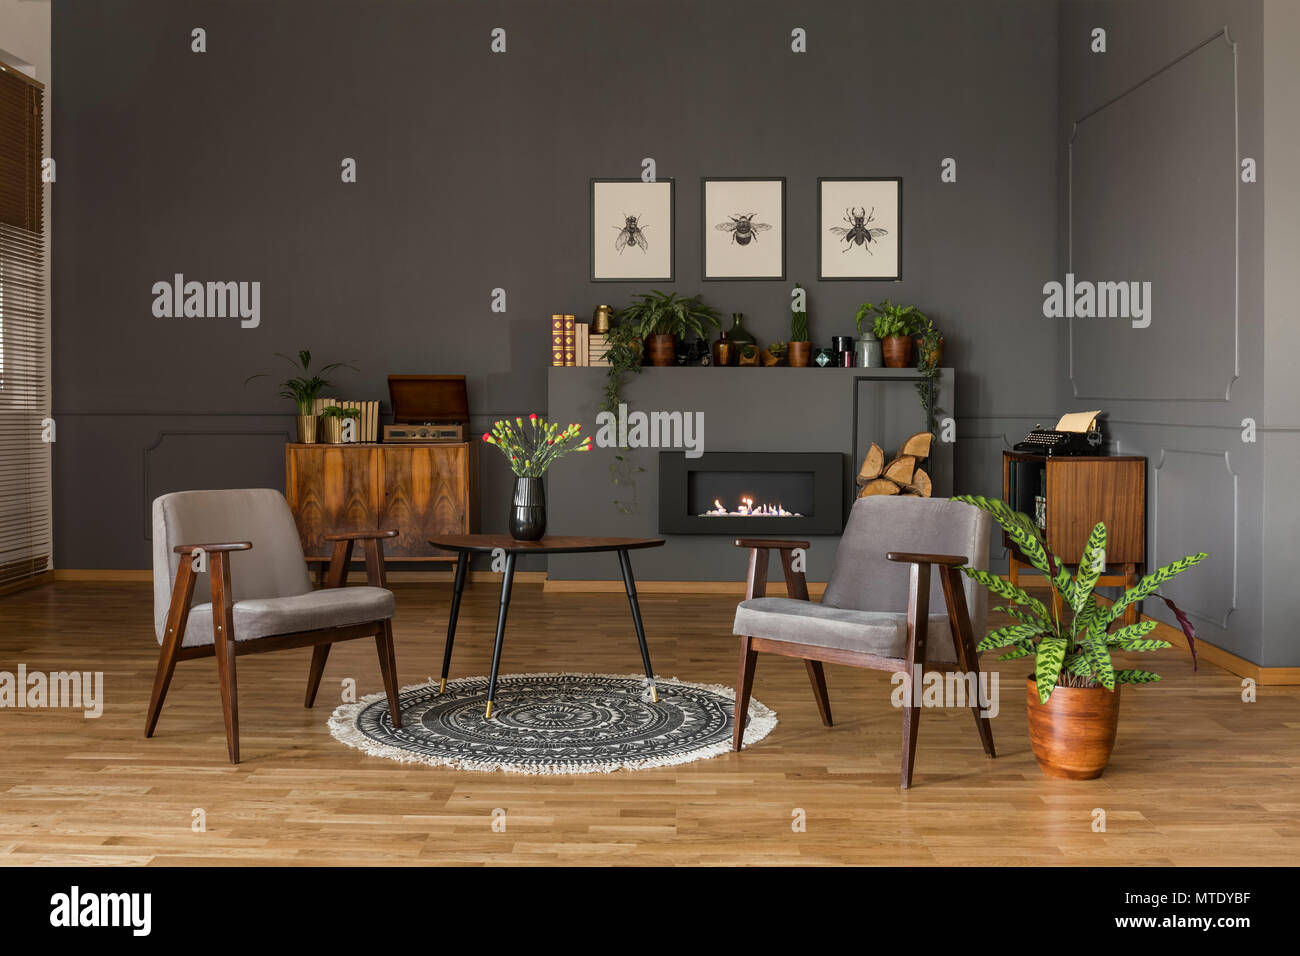 Table avec des fleurs sur un tapis gris entre les fauteuils en rétro salon intérieur avec plante. Photo réelle Banque D'Images